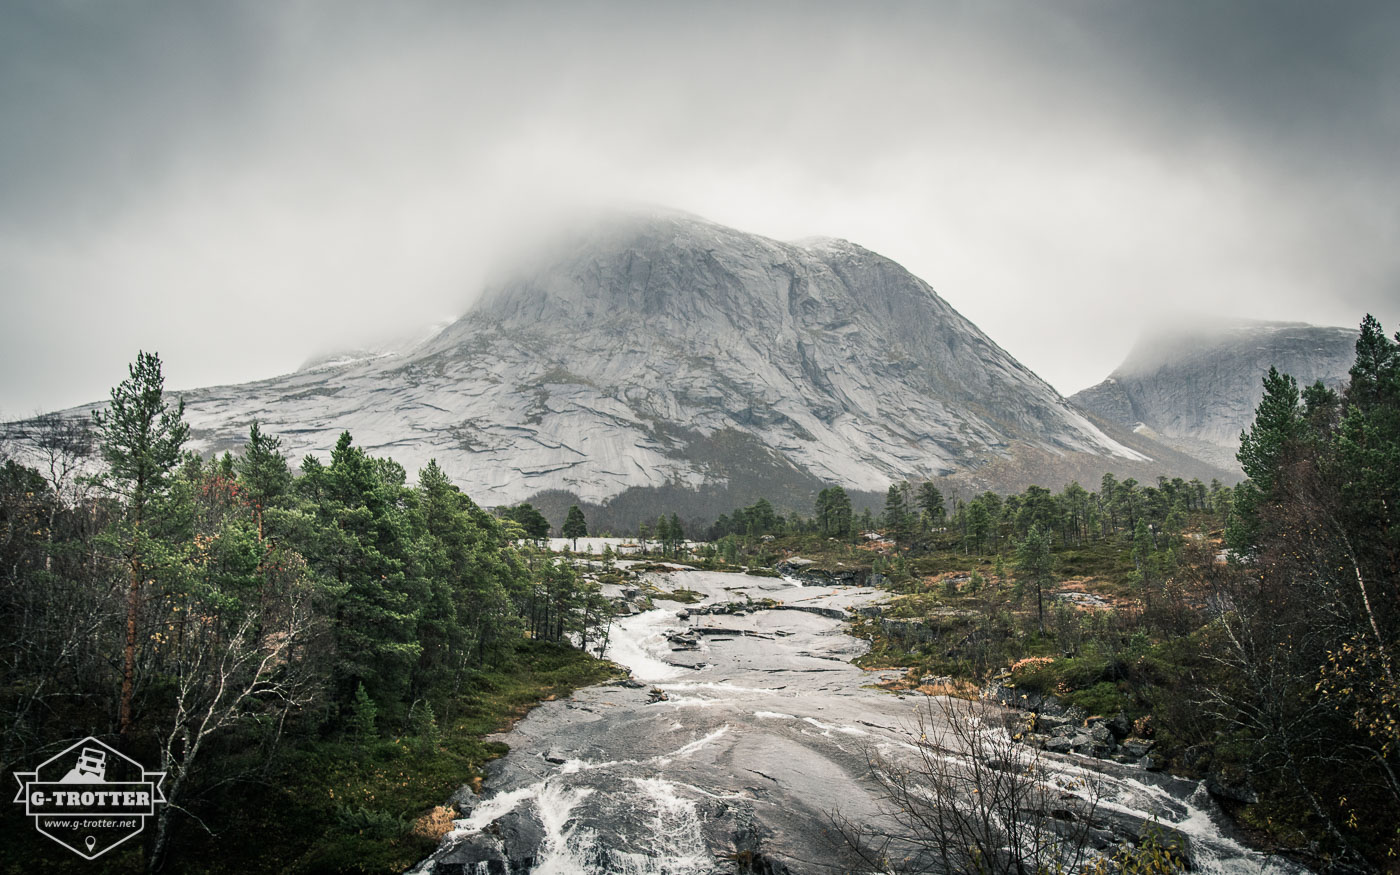 Bild 19 der Bildergalerie “4700 km durch Norwegen”